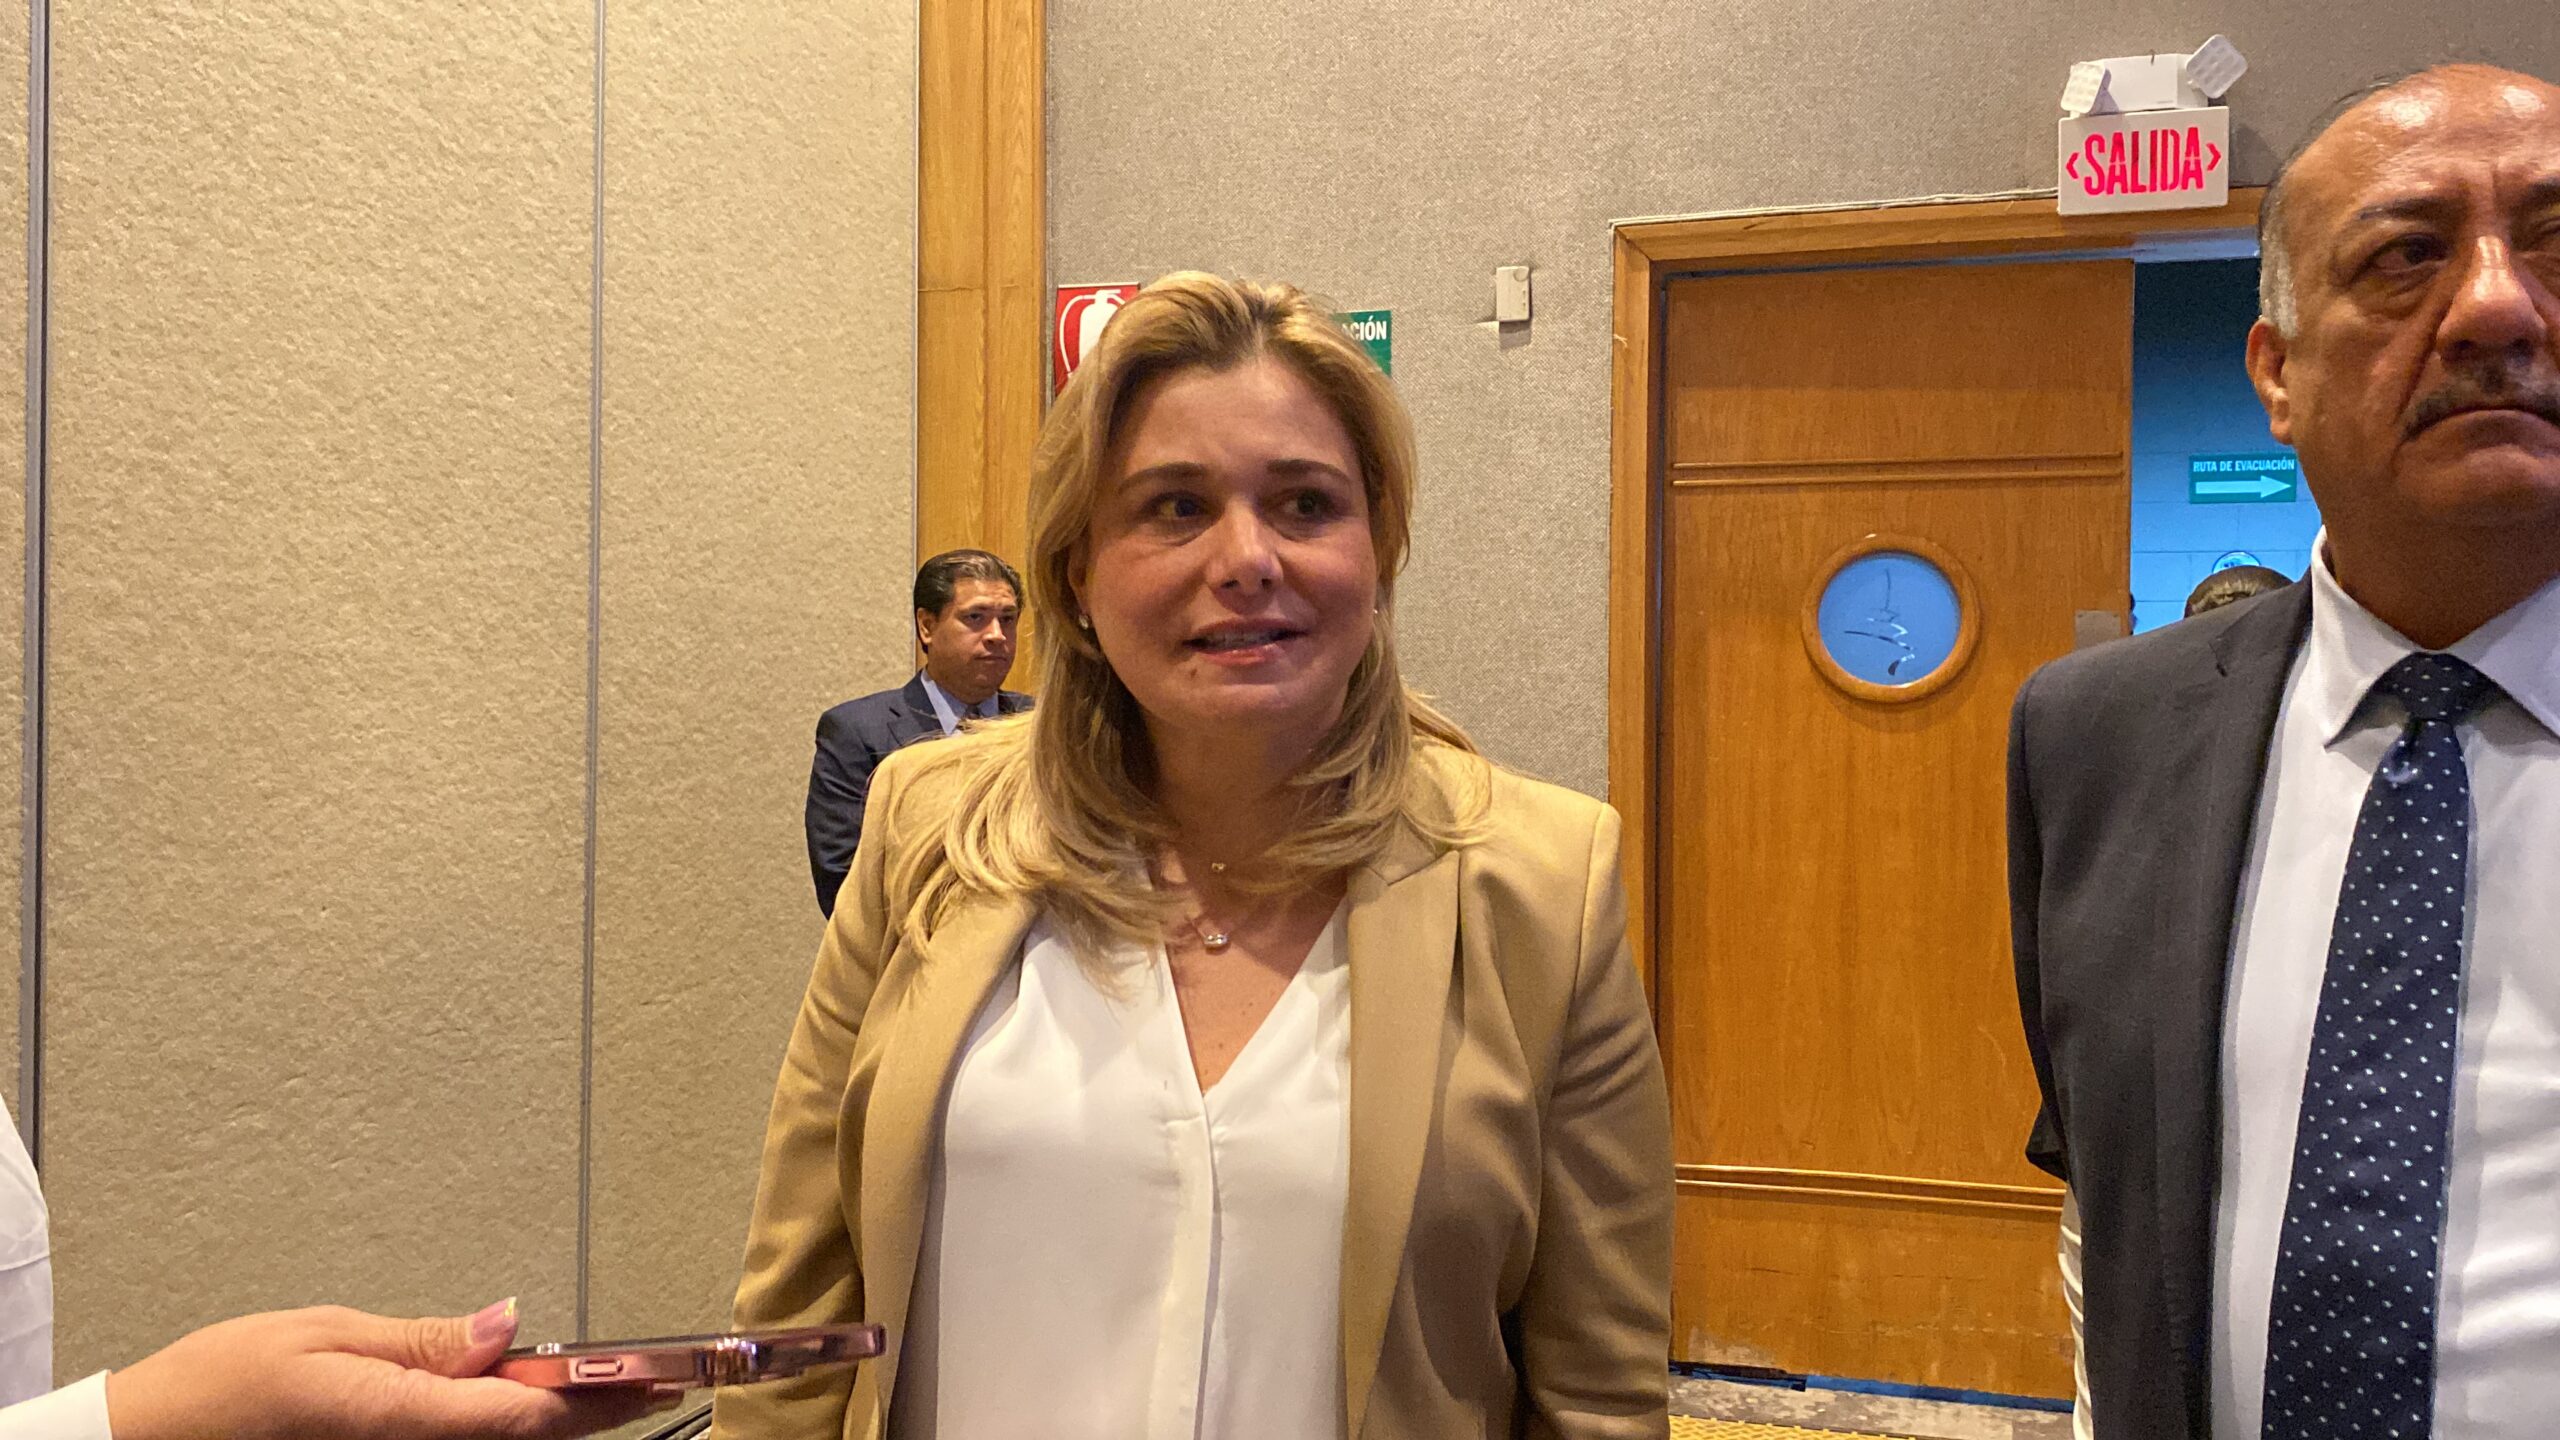 Propuestas y honestidad, pide Maru Campos en debate por alcaldía de Chihuahua